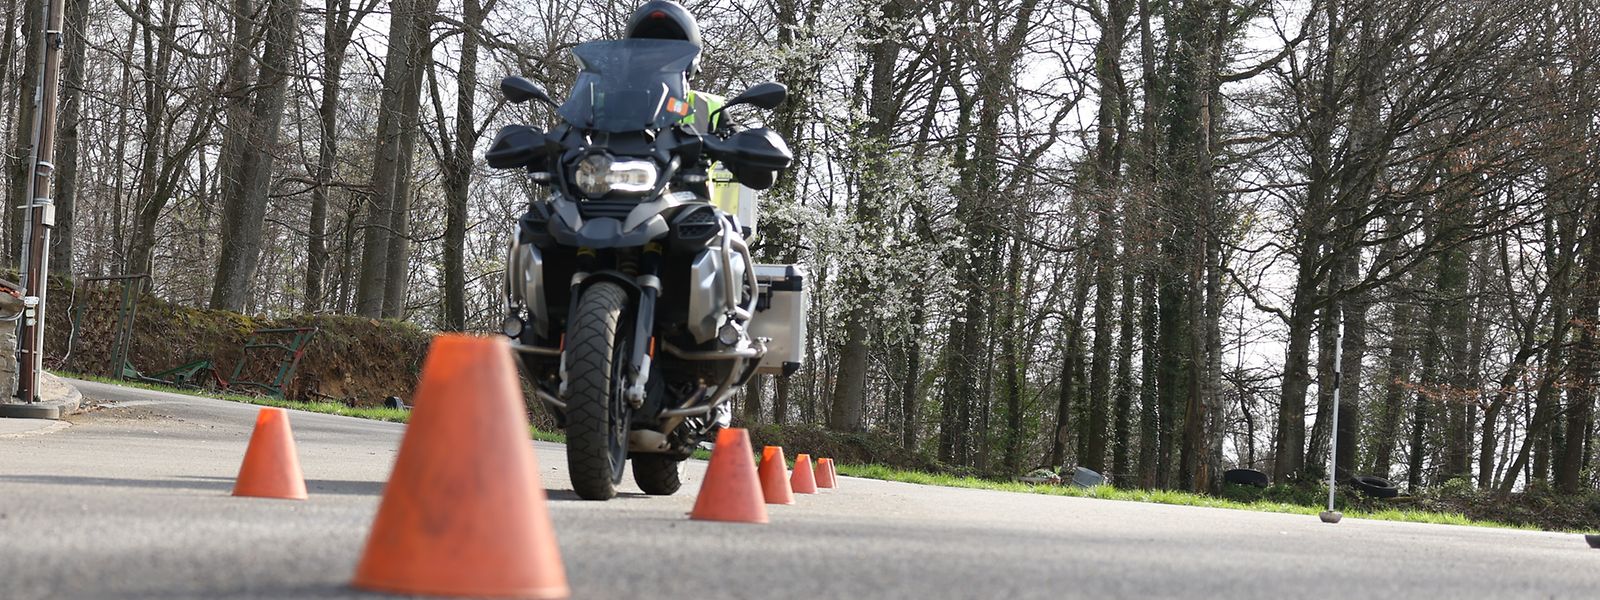 Au cours des cinq dernières années, le nombre de permis de conduire moto délivrés a augmenté de près d'un tiers.